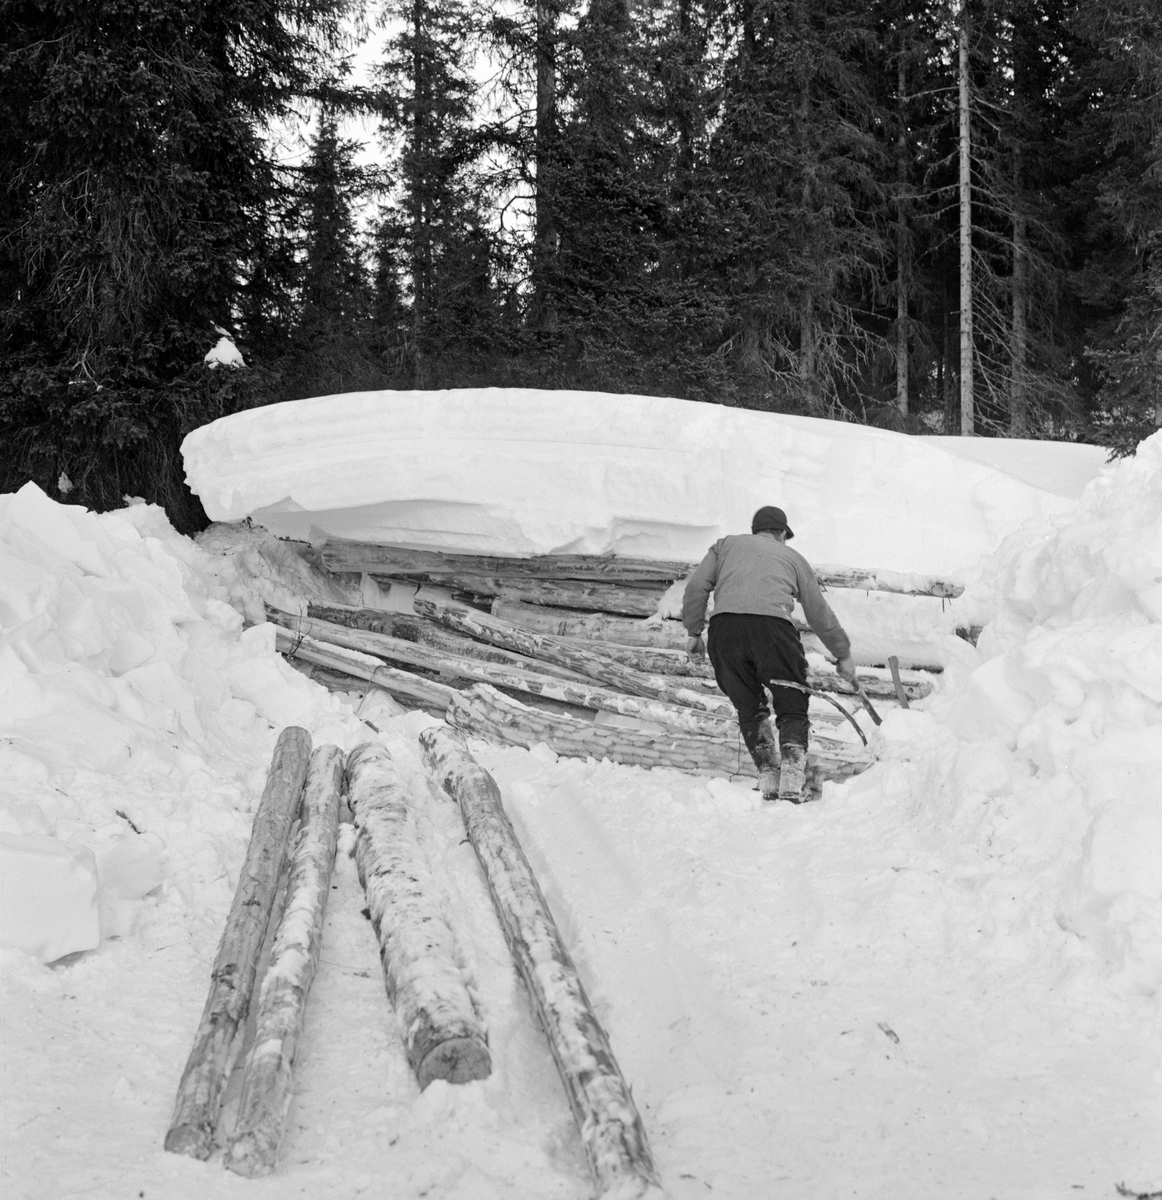 Framhenting av tømmer for hankekjøring i Vestre Gausdal i Oppland vinteren 1967.   Bildet viser ei lunne med barket slipvirke som åpenbart hadde ligget nedsnødd en periode før kjøringa startet.  Tømmerkjøreren har derfor måttet måke vekk noe av snødekket, slik at han kunne trekke stokkene fram i kjørevegen.   Her ser vi skogsarbeideren bakfra, antakelig idet han skulle dra fram en av stokkene.  På marka i forgrunnen lå det fire stokker som var klare for kjøring.  Mannen på bildet er antakelig Reidar Solberg.

I Vestre Gausdal var liene ned mot bygda svært bratte.  I slike utforbakker var det nesten umulig å kjøre tømmer med rustning eller andre sledetyper før de moderne skogsbilvegene kom.  Her ble virket hentet i hankevendinger fra skogene øverst liene ned mot fløtingsvassdraget i dalbotnen.